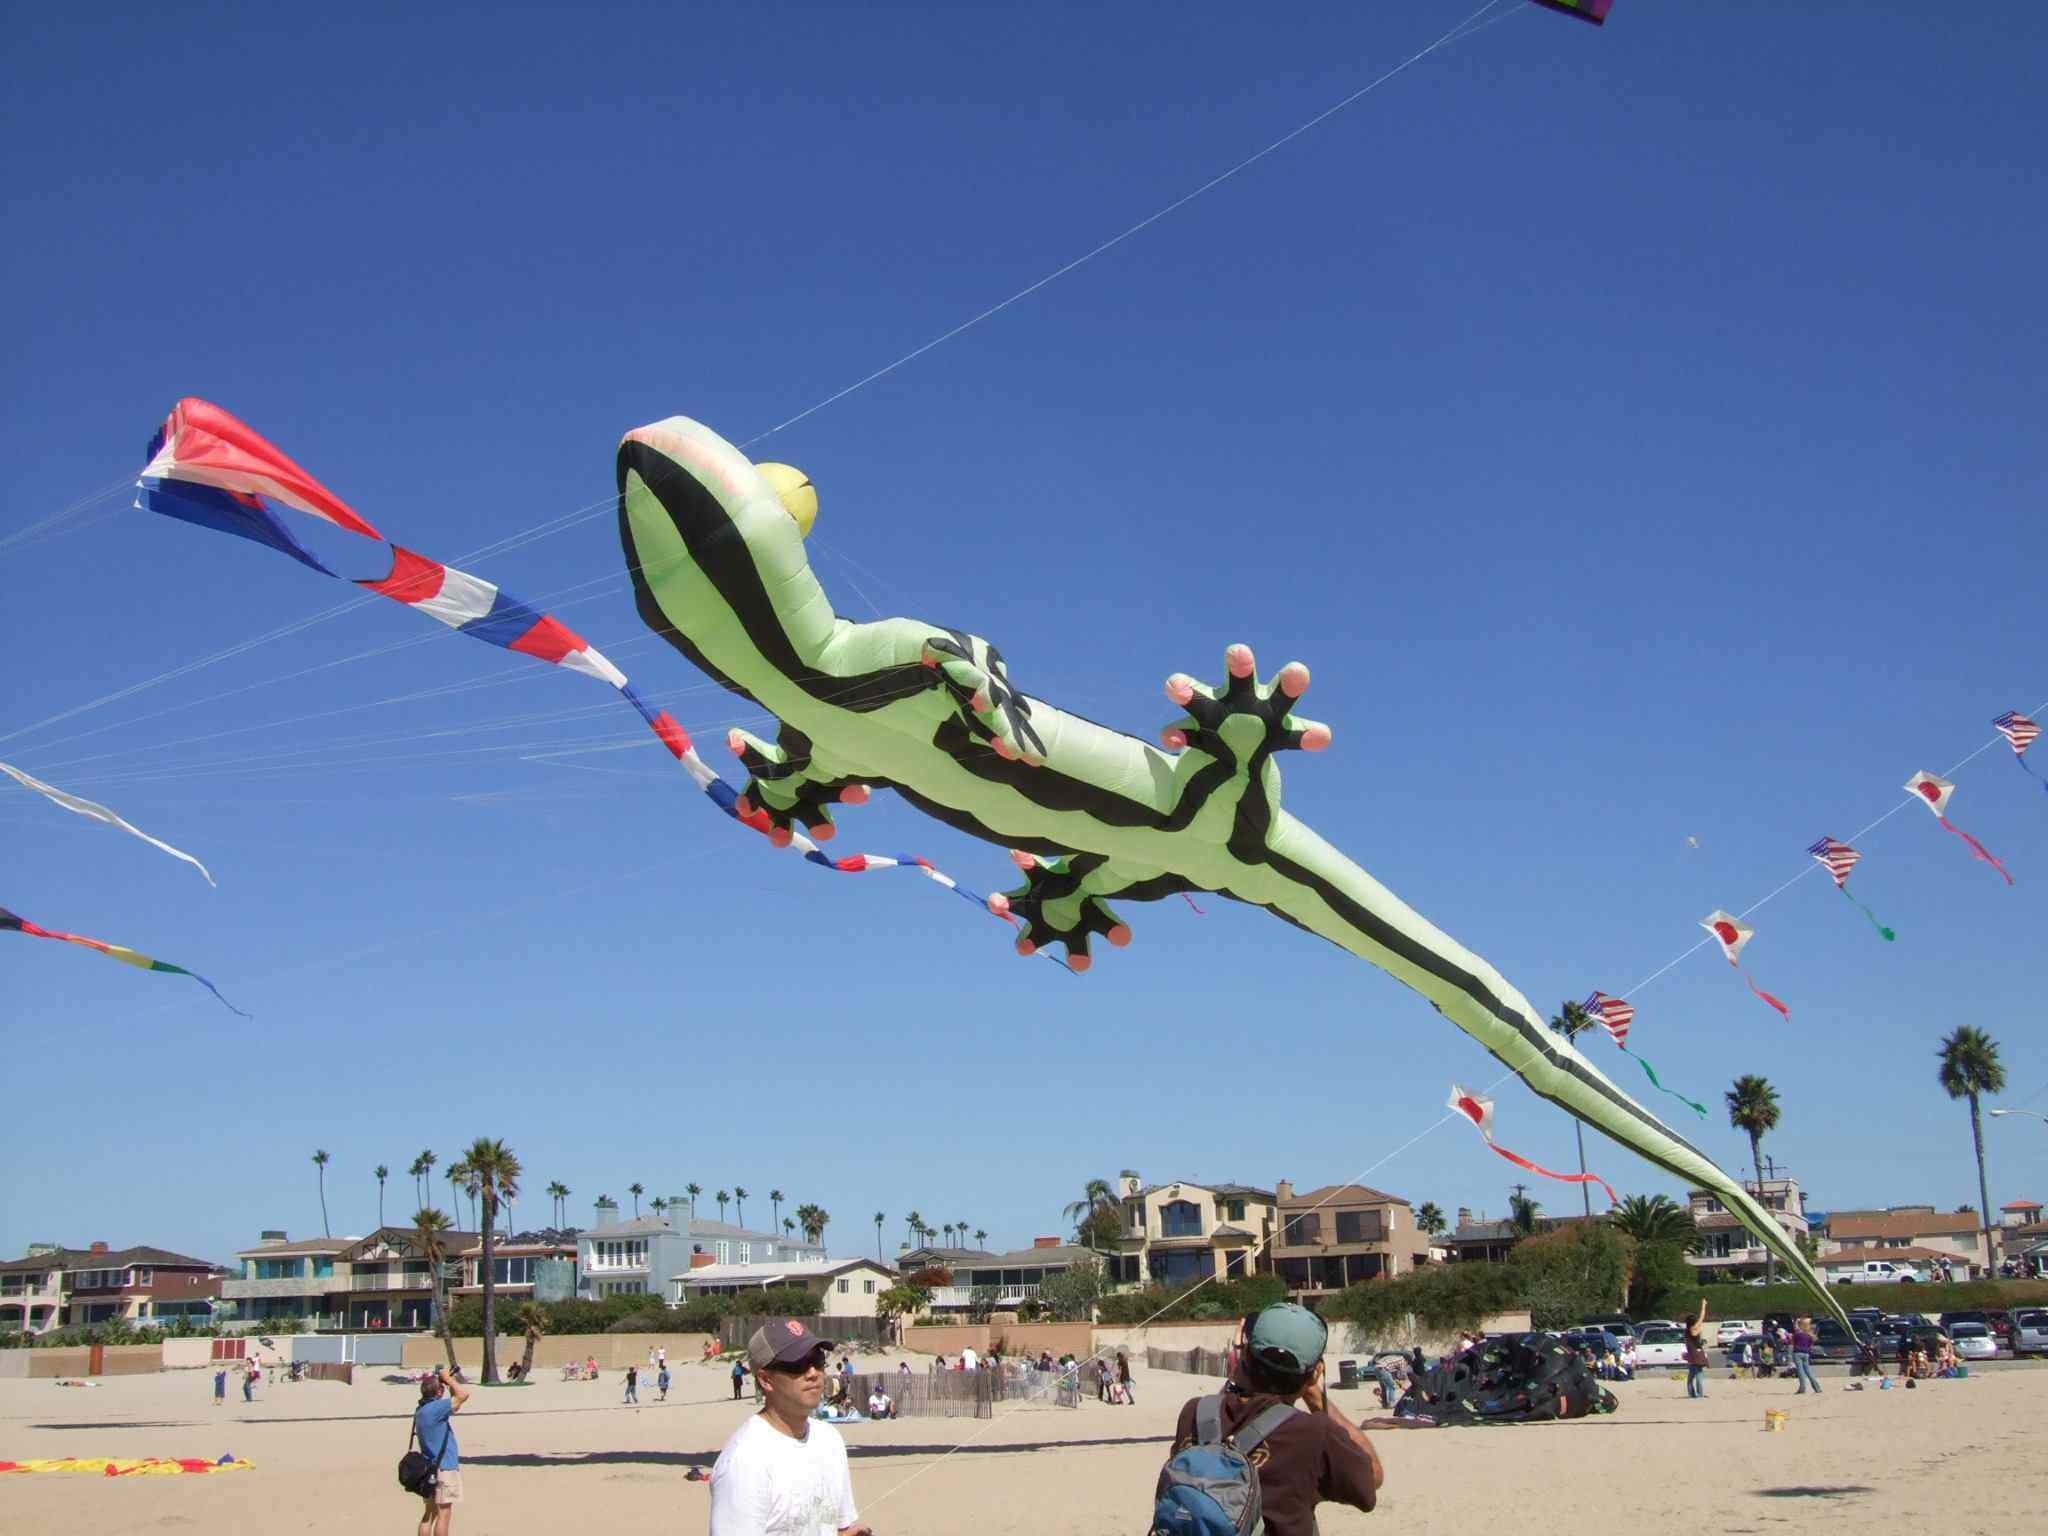 Japan America Kite Festival in Santa Monica